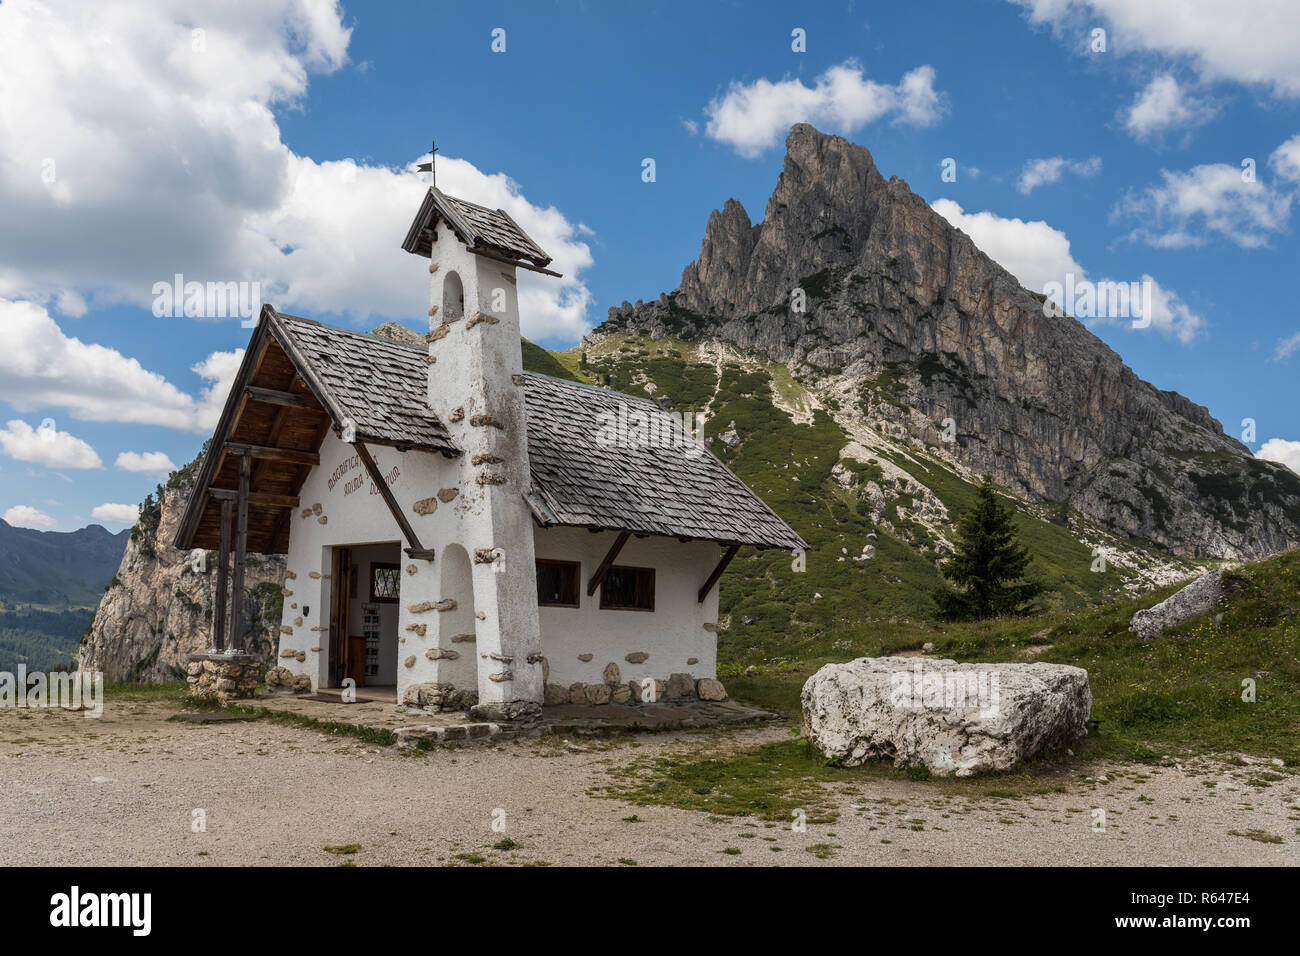 Chapel at Passo Falzarego (Falzarego Pass) and Sass de Stria mountain, Dolomites, Veneto, Italy Stock Photo